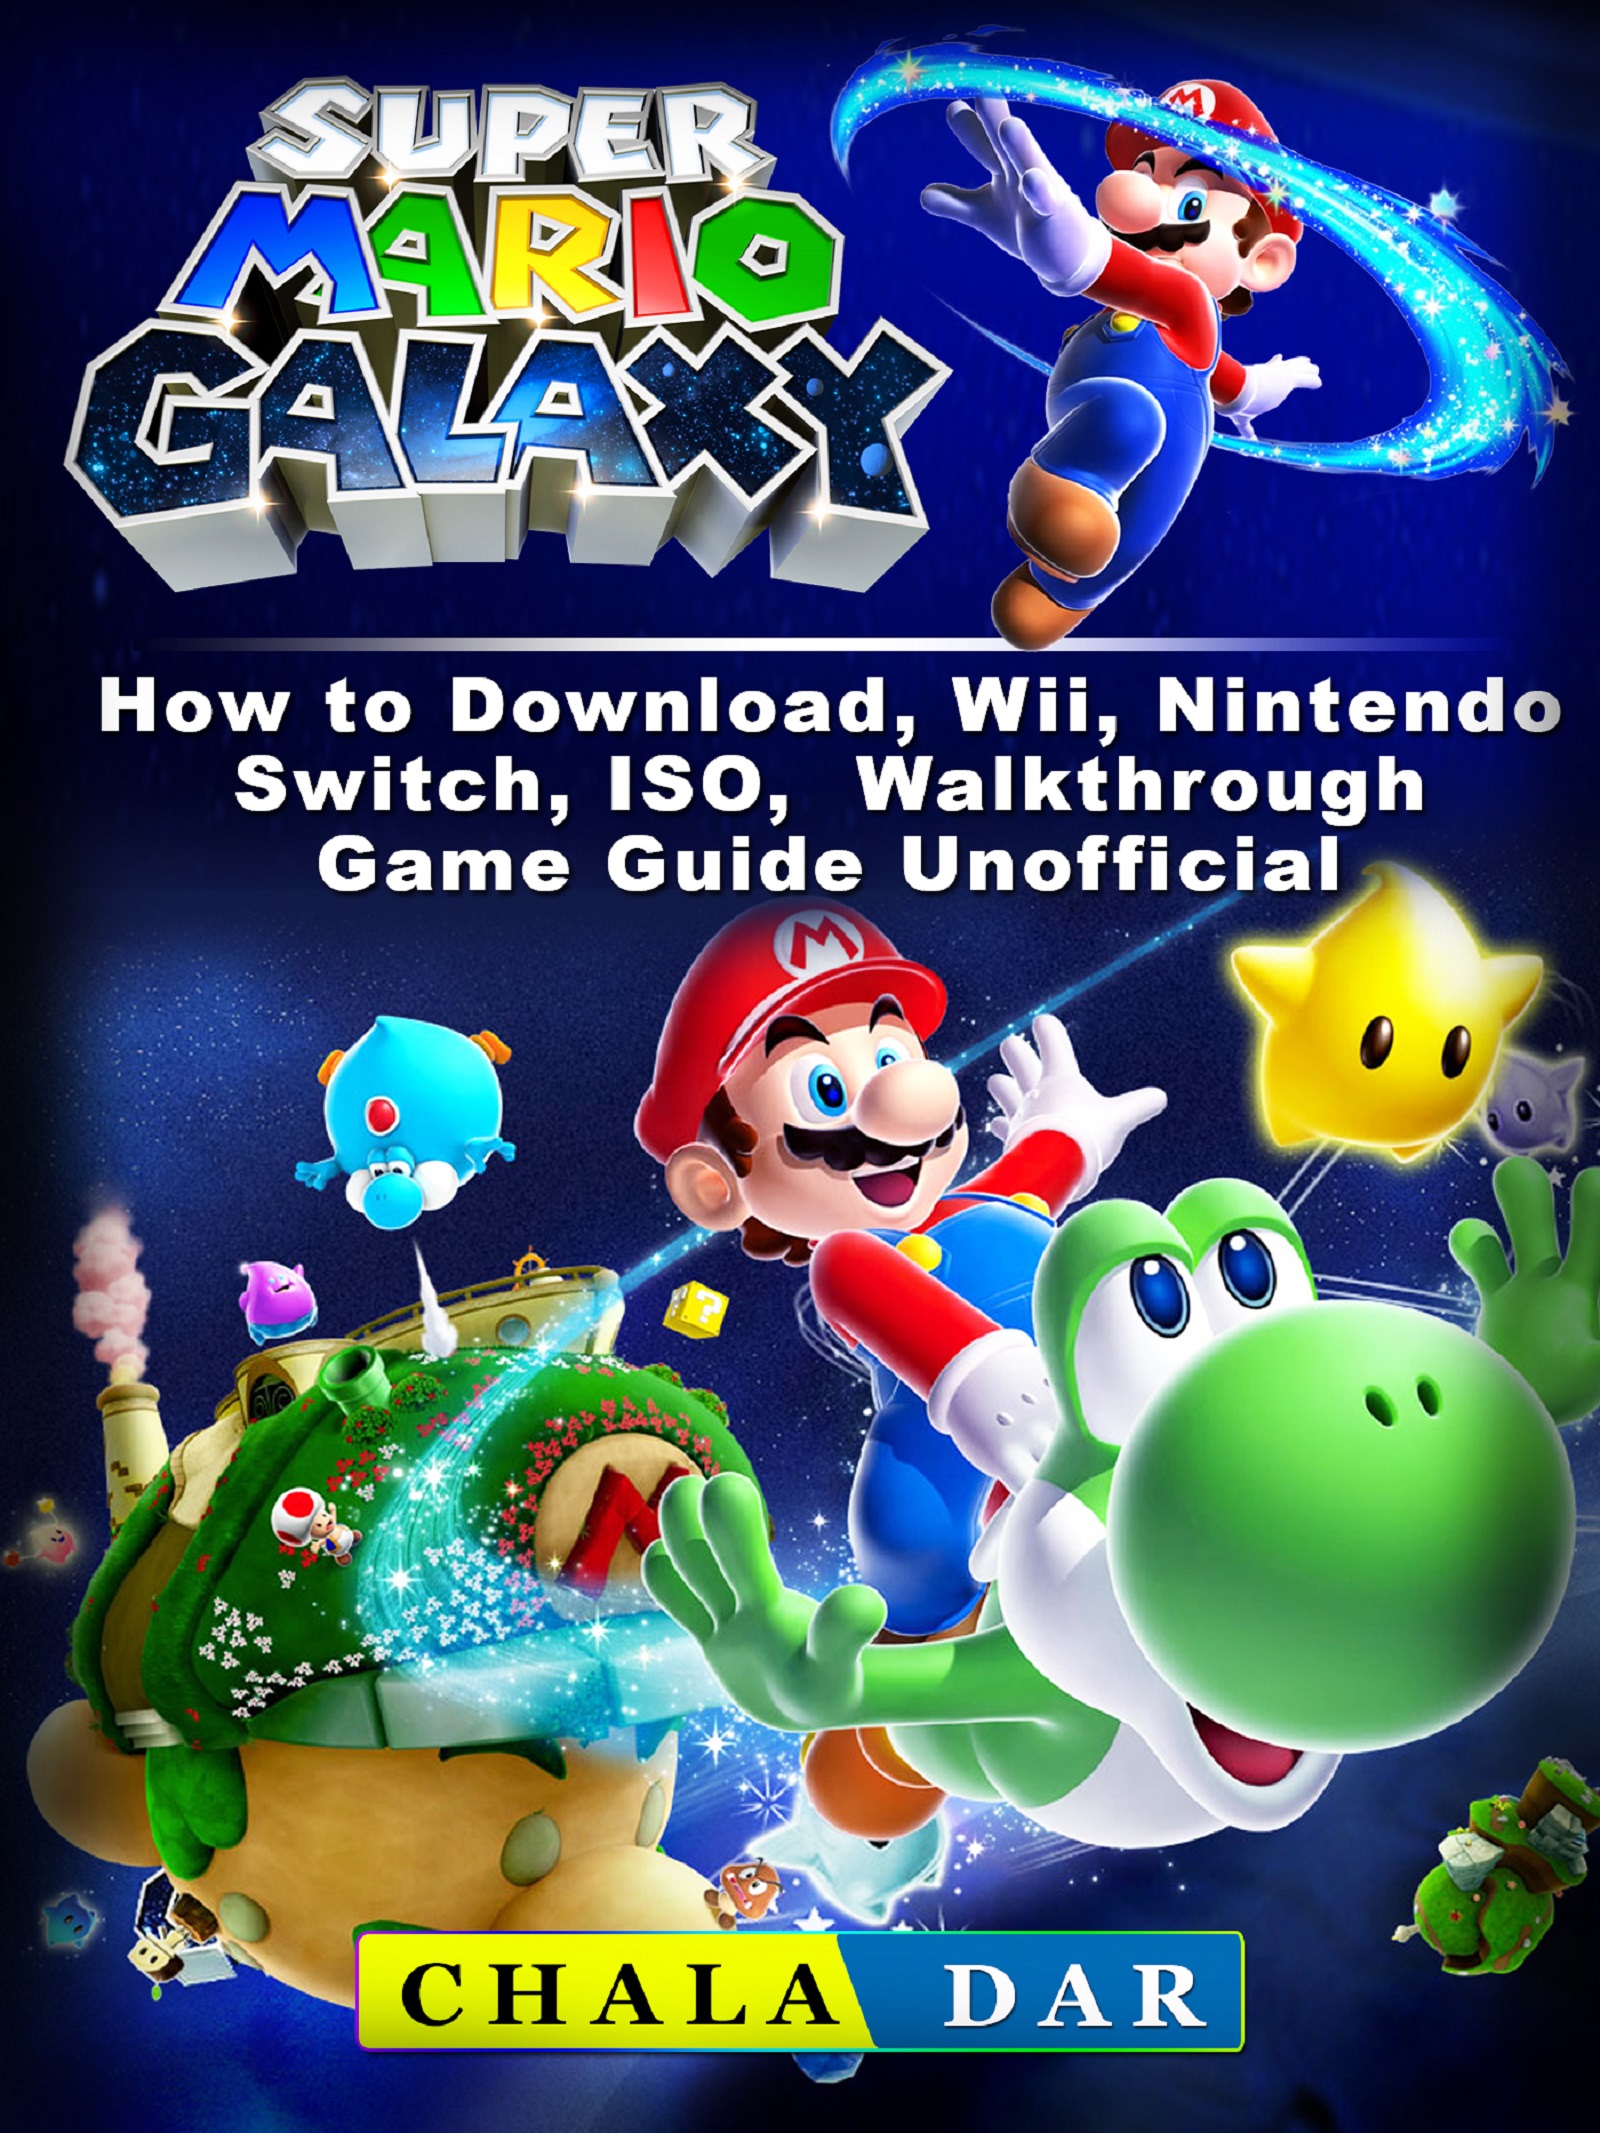 super mario galaxy 2 download pc free